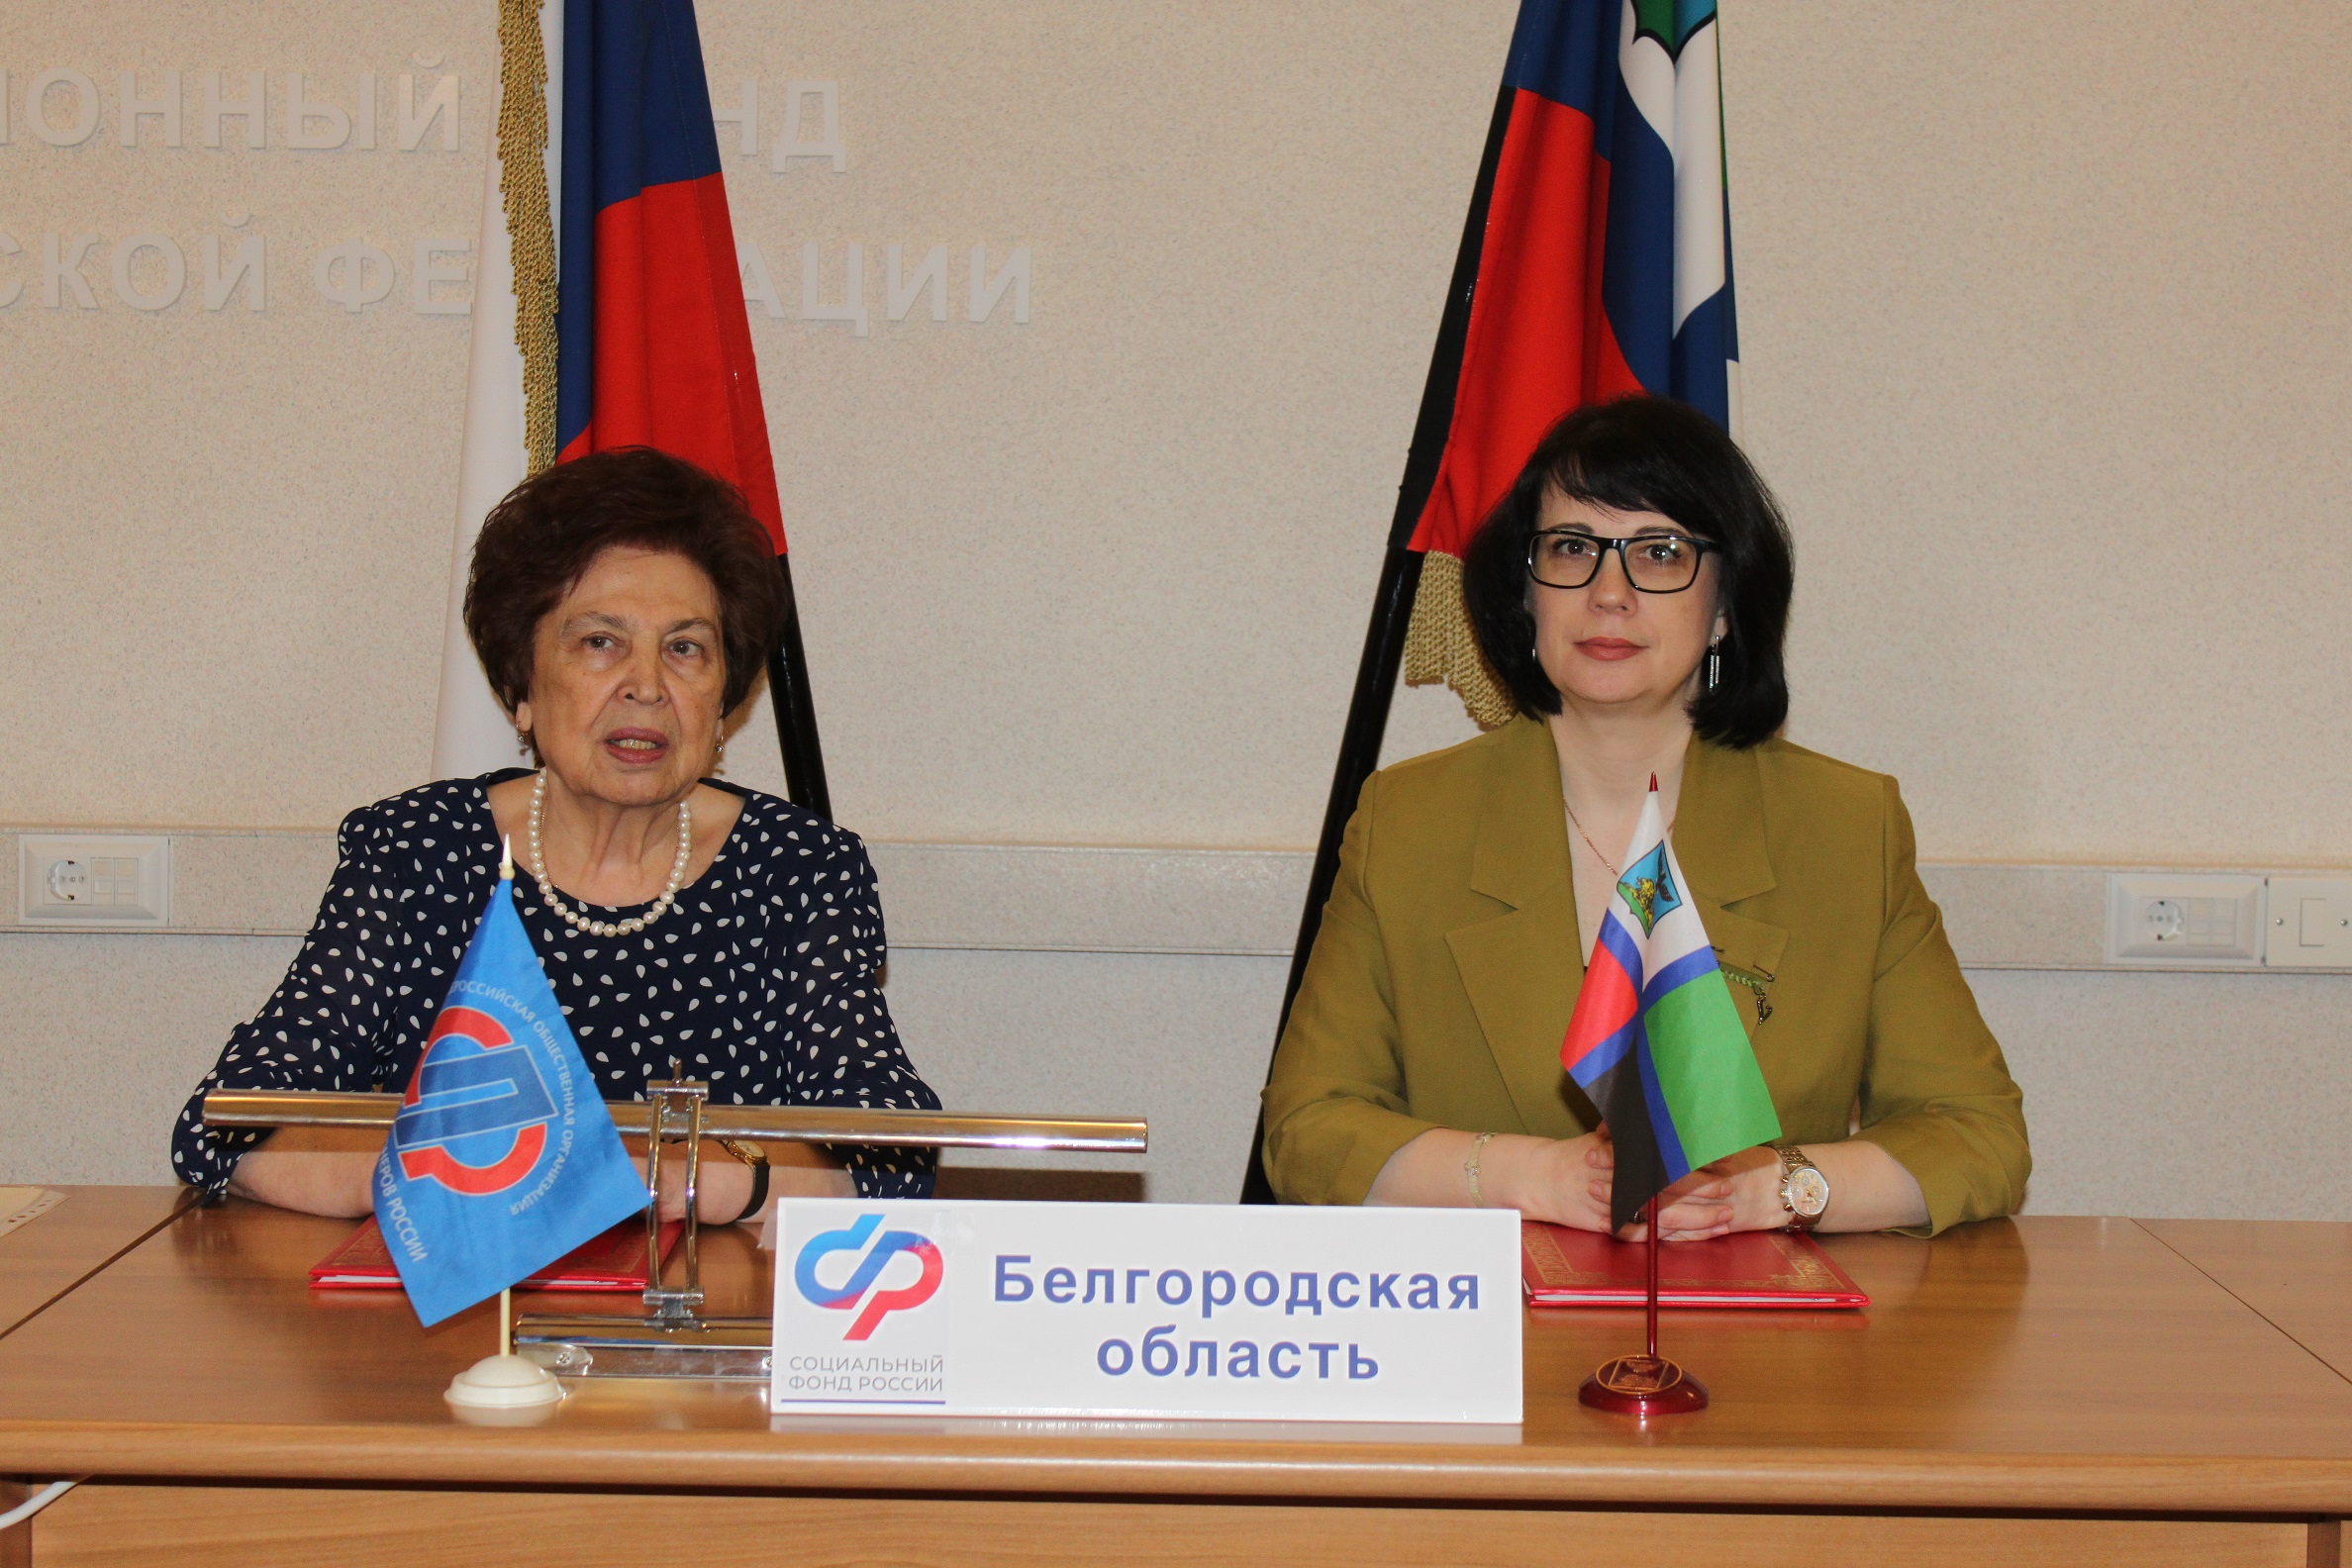 Подписано Соглашение о сотрудничестве между ОСФР и региональным отделением Союзом пенсионеров России